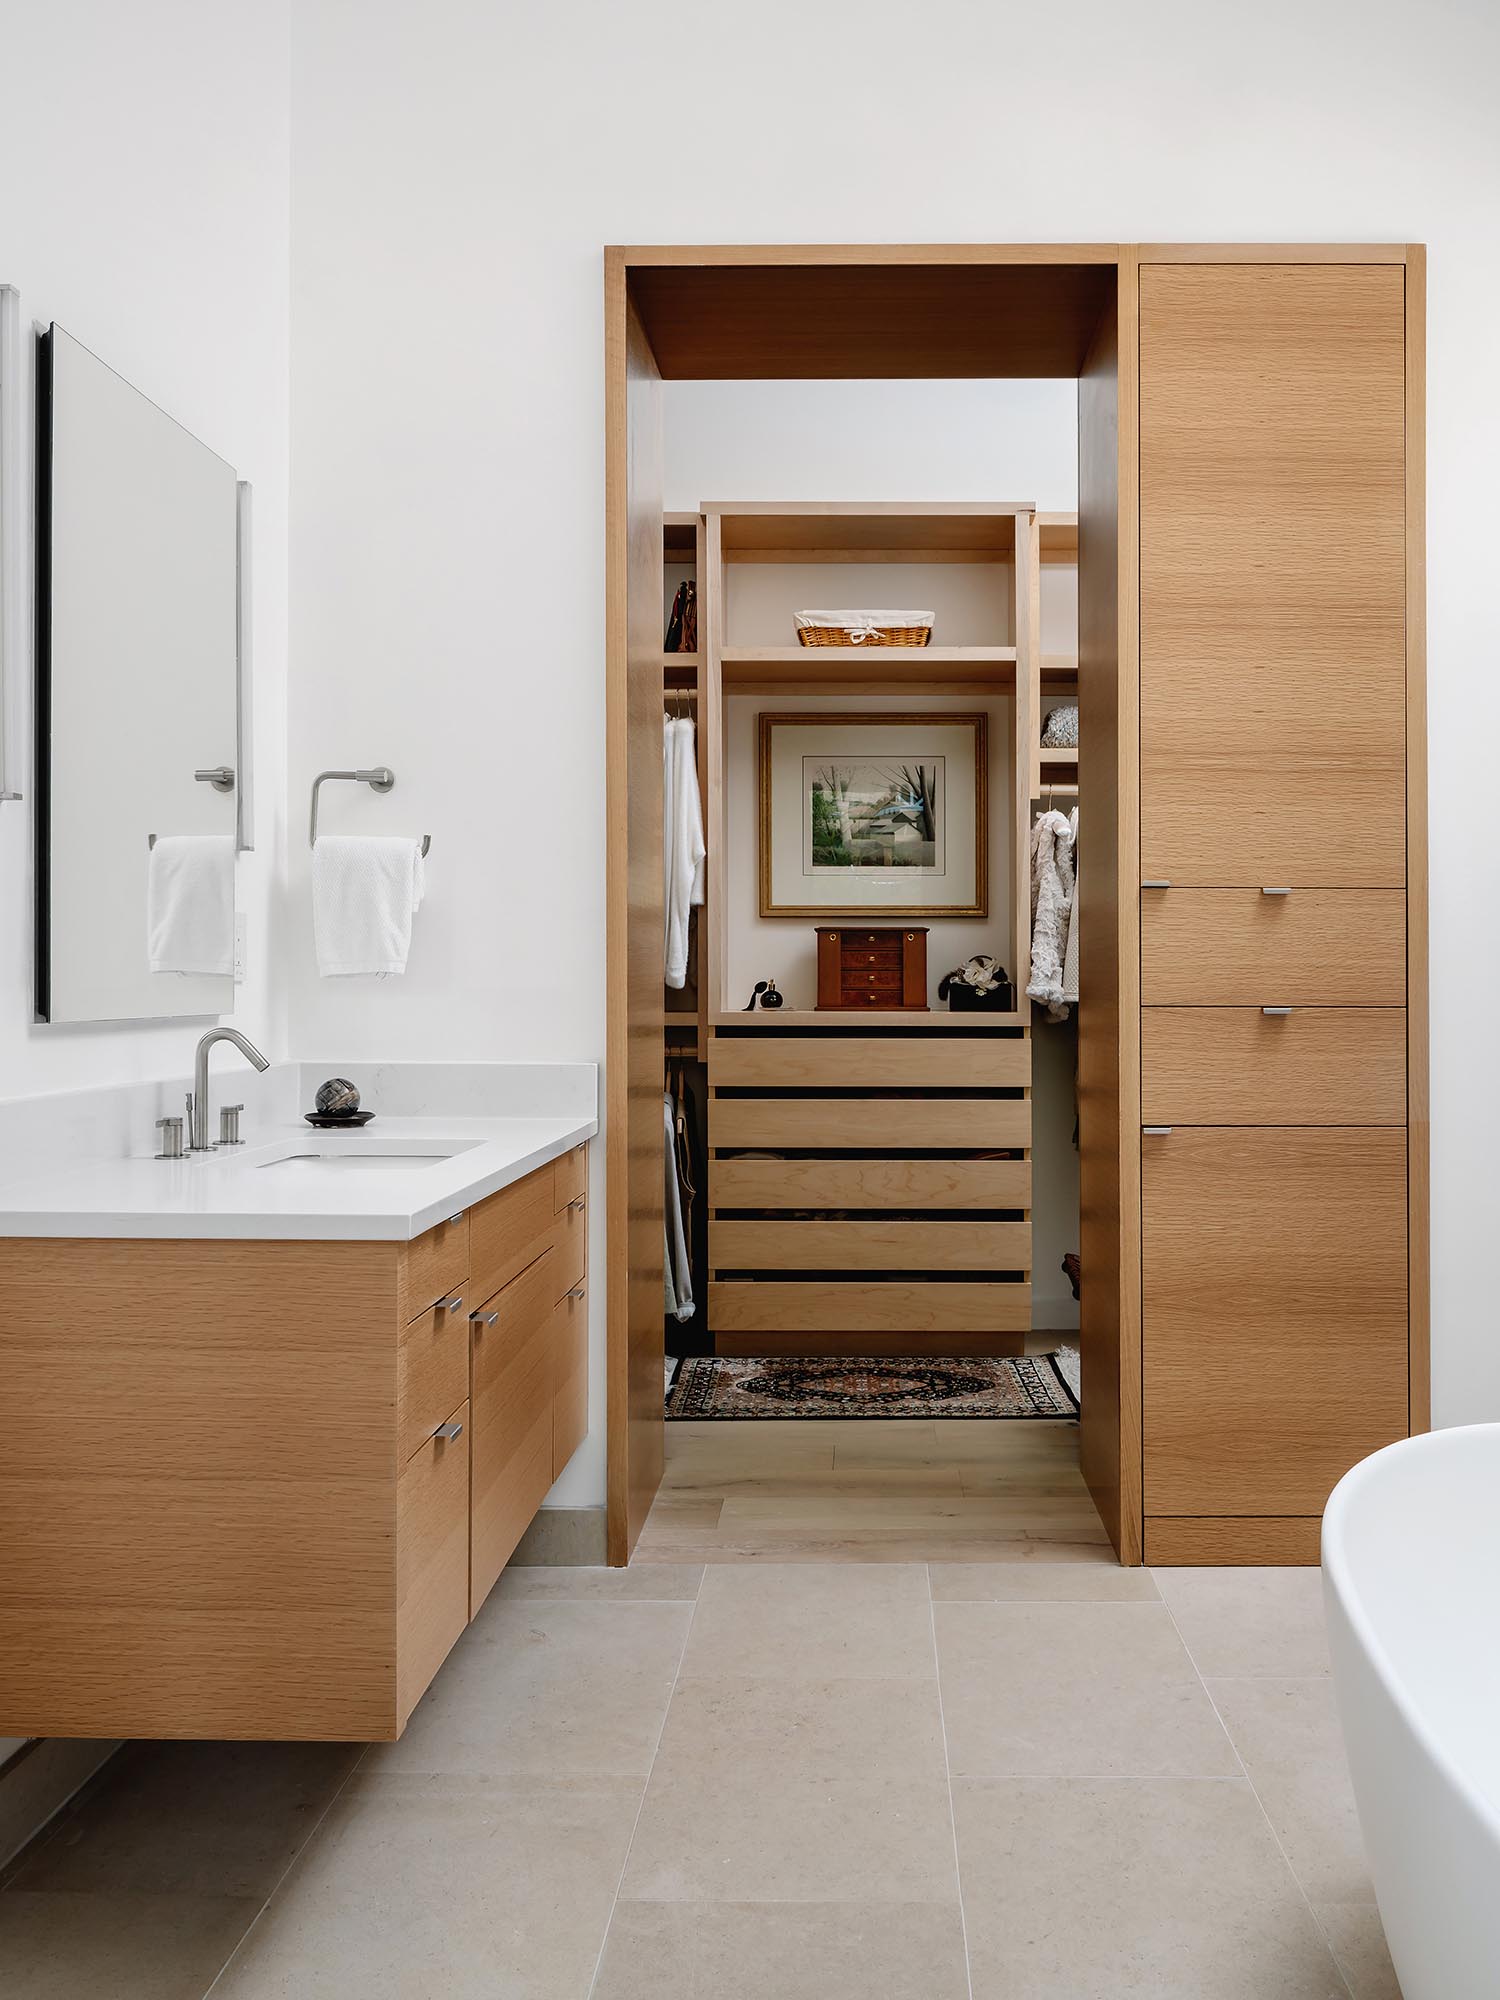 В собственной ванной комнате, к которой примыкает гардеробная, есть отдельно стоящая ванна, отдельный туалетный столик и известняковые полы и стены.